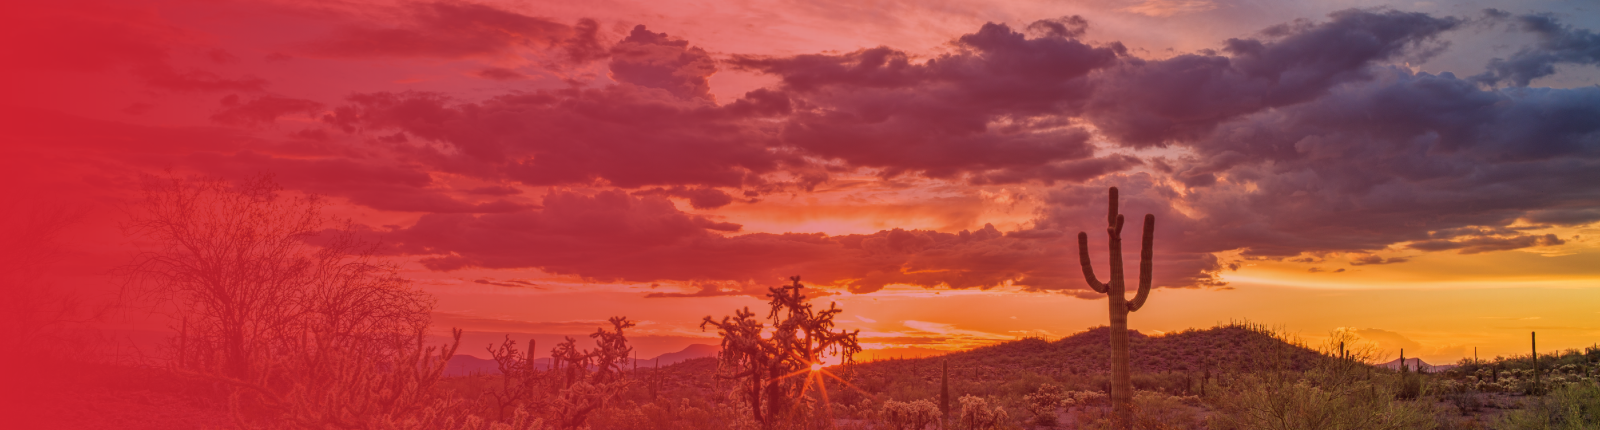 Phoeniz Arizona sunset